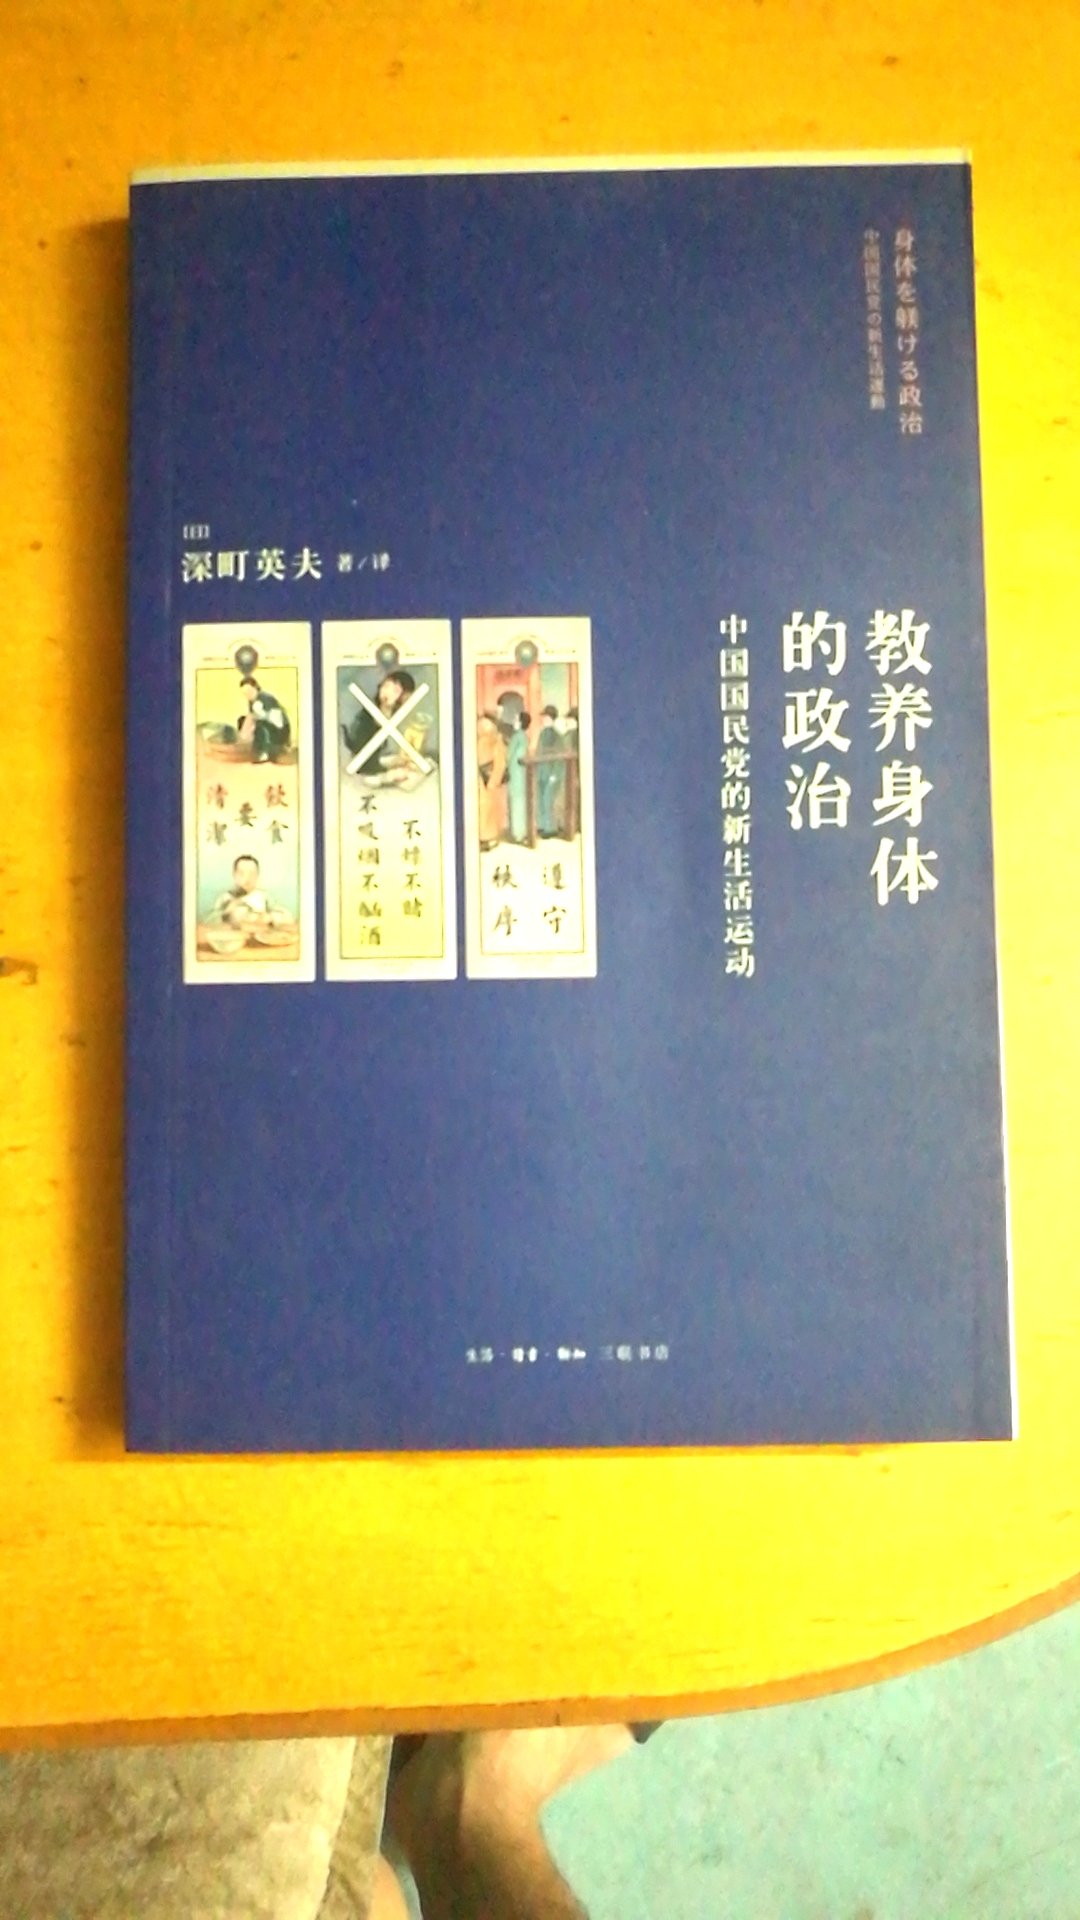 本书是日本学者深町英夫写的关于中国国民党新生活运动的专著。